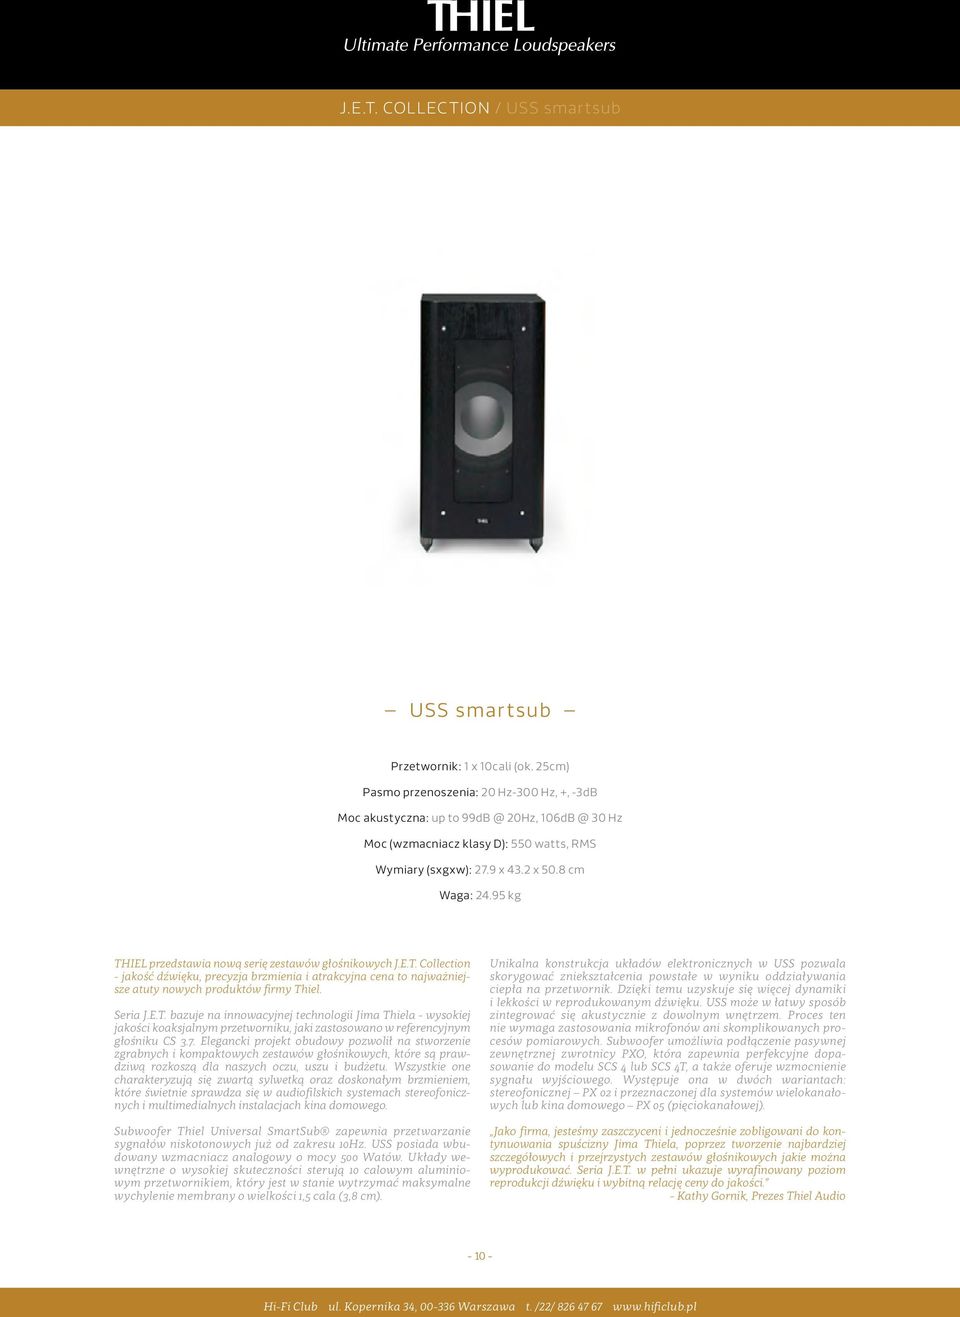 95 kg THIEL przedstawia nową serię zestawów głośnikowych J.E.T. Collection - jakość dźwięku, precyzja brzmienia i atrakcyjna cena to najważniejsze atuty nowych produktów firmy Thiel. Seria J.E.T. bazuje na innowacyjnej technologii Jima Thiela - wysokiej jakości koaksjalnym przetworniku, jaki zastosowano w referencyjnym głośniku CS 3.